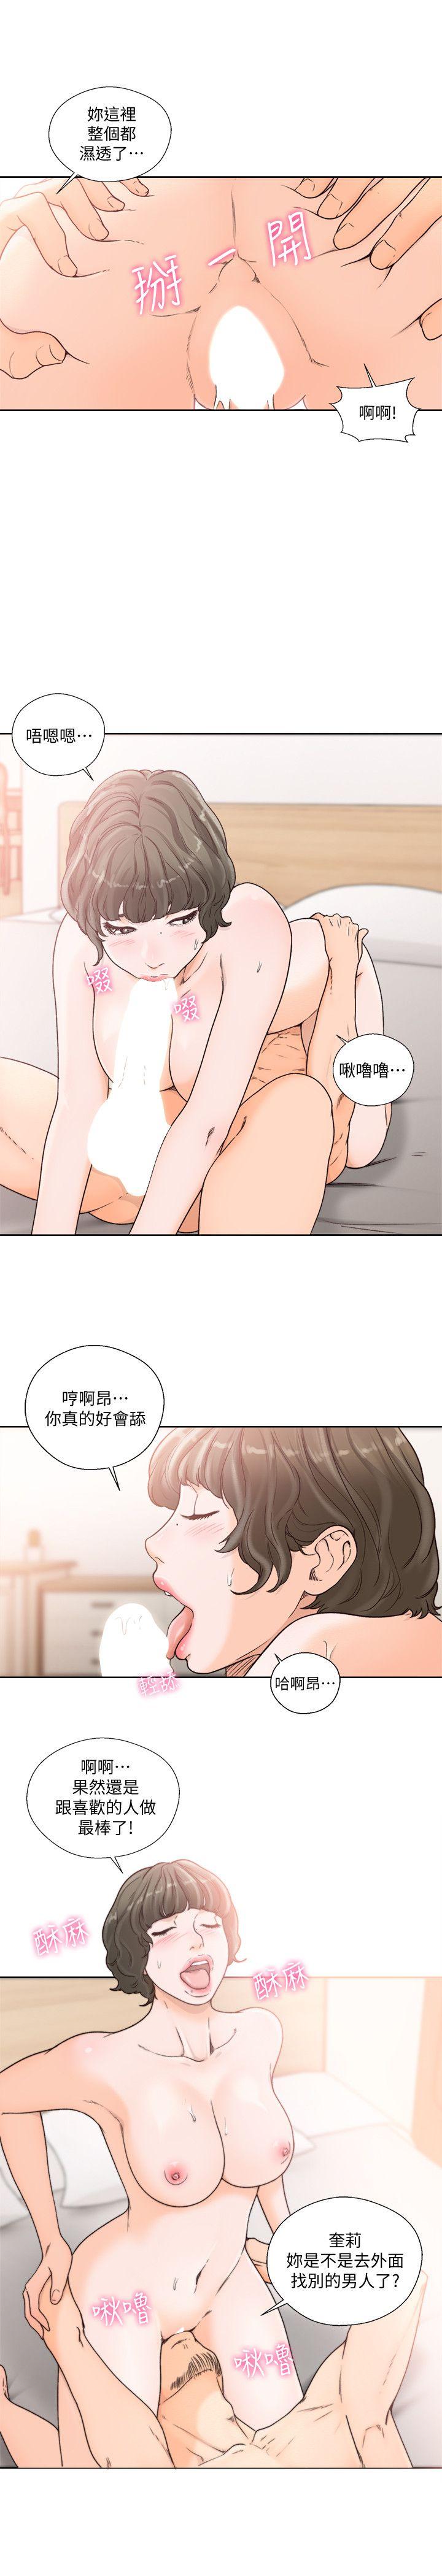 韩国污漫画 解禁:初始的快感 第97话-带野男人回家 16